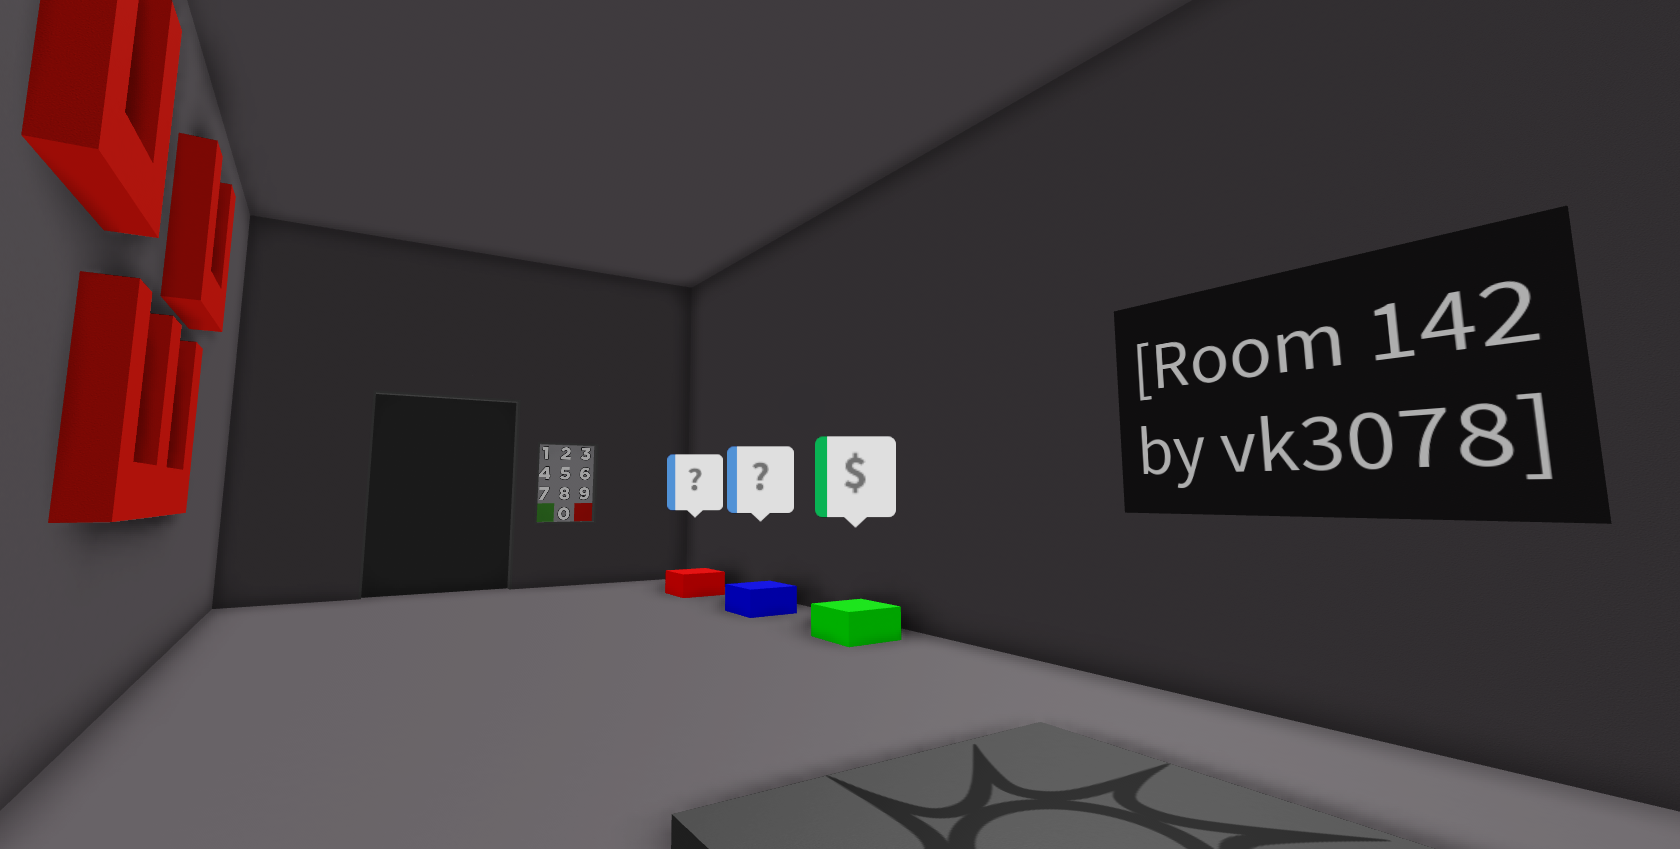 Room 21, Untitled Door Game Wiki